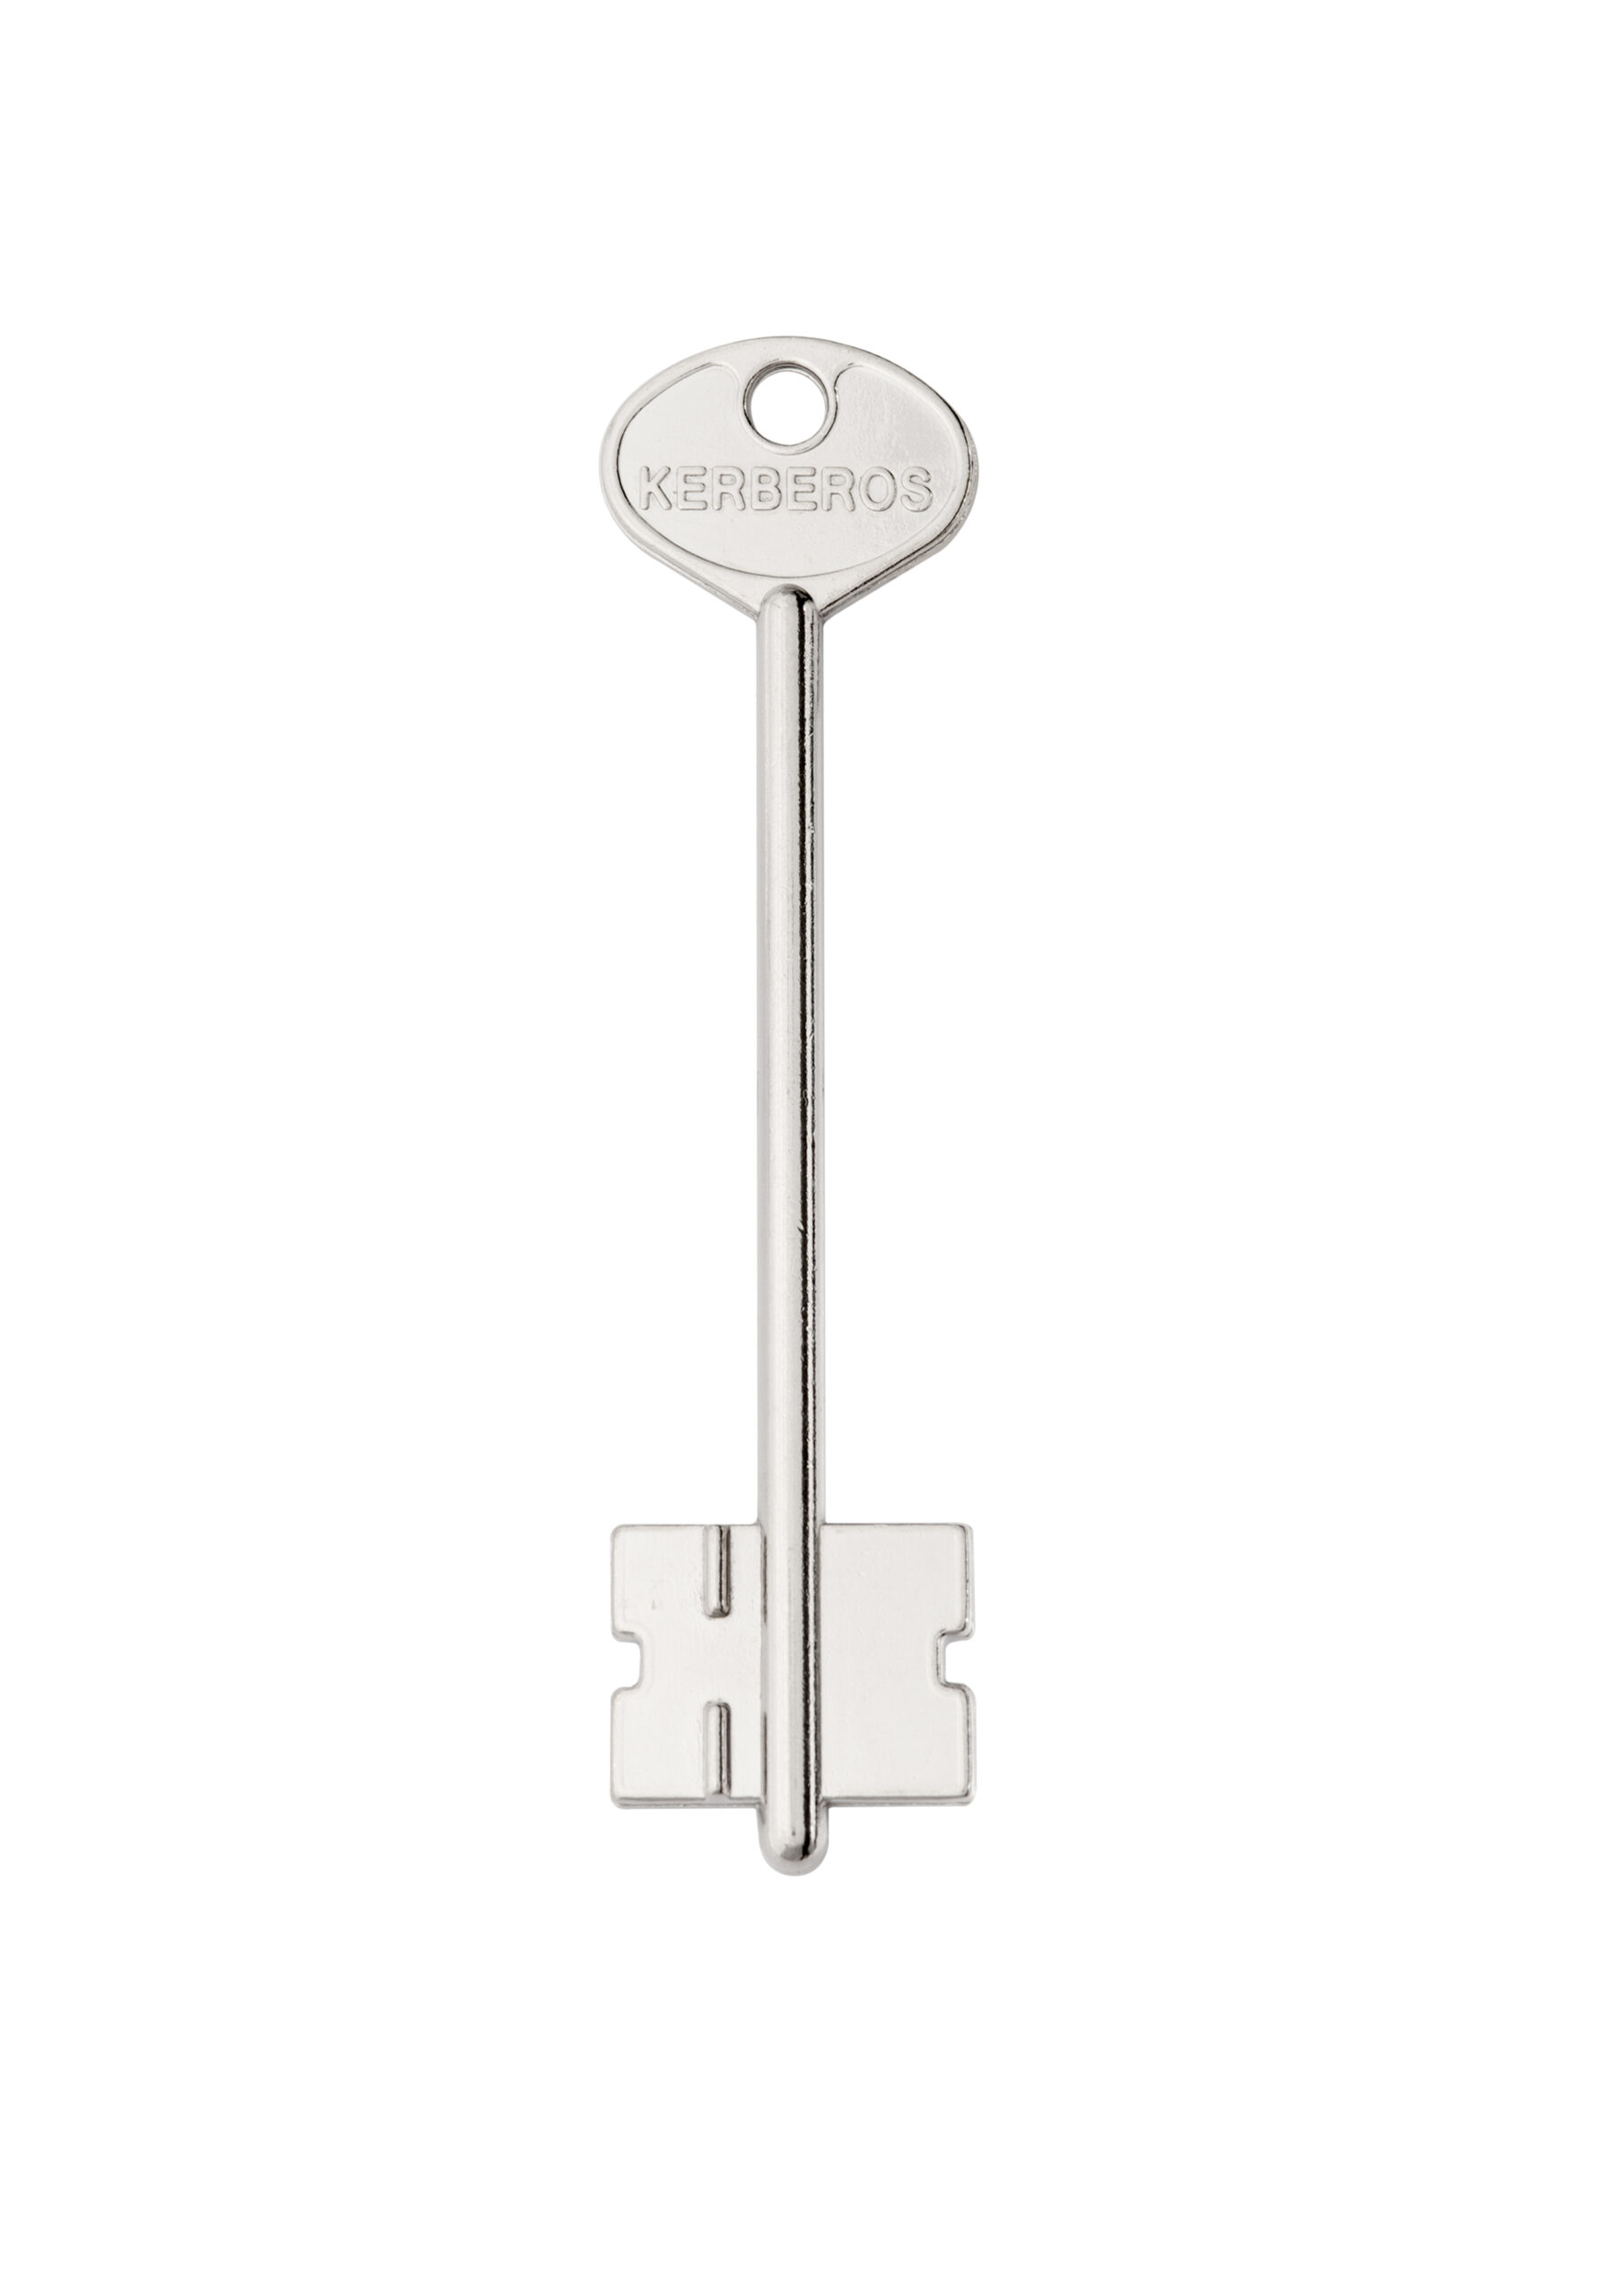 Ключ Керберос 105мм 1